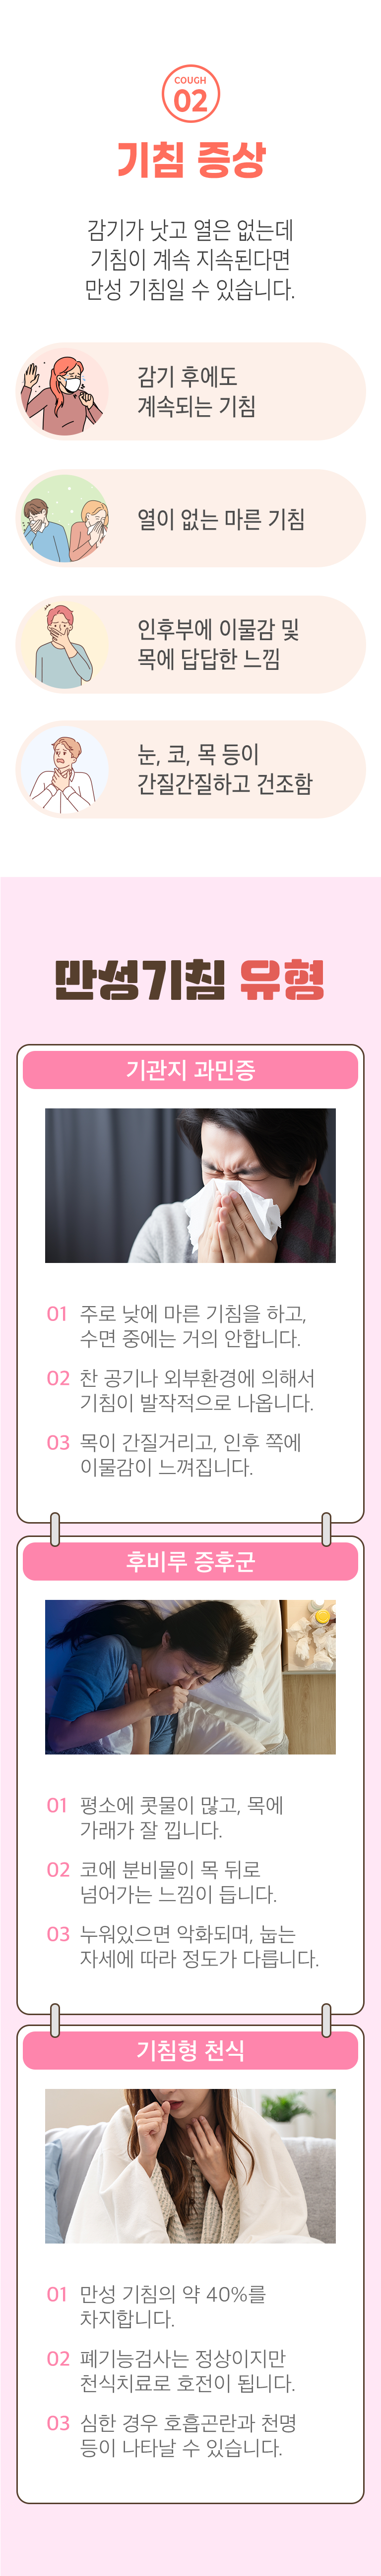 02 기침 증상 ▷ 감기가 낫고 열은 없는데 기침이 계속 된다면 만성 기침일 수 있습니다. 감기 후에도 계속되는 기침, 열이 없는 마른 기침, 인후부에 이물감 및 목에 답답한 느낌, 눈, 코, 목 등이 간질간질하고 건조함. 만성기침 유형 ▶ 기관지 과민증 - 1. 주로 낮에 마른 기침을 하고, 수면 중에는 거의 안합니다. 2. 찬 공기나 외부환경에 의해서 기침이 발작적으로 나옵니다. 3. 목이 간질거리고, 인후 쪽에 이물감이 느껴집니다. 후비루 증후군 - 1. 평소에 콧물이 많고, 목에 가래가 잘 낍니다. 2. 코에 분비물이 목 뒤로 넘어가는 느낌이 듭니다. 3. 누워있으면 악화되며, 눕는 자세에 따라 정도가 다릅니다. 기침형 천식 - 1. 만성 기침의 약 40%를 차지합니다. 2. 폐기능검사는 정상이지만 천식치료로 호전이 됩니다. 3. 심한 경우 호흡곤란과 천명 등이 나타날 수 있습니다.